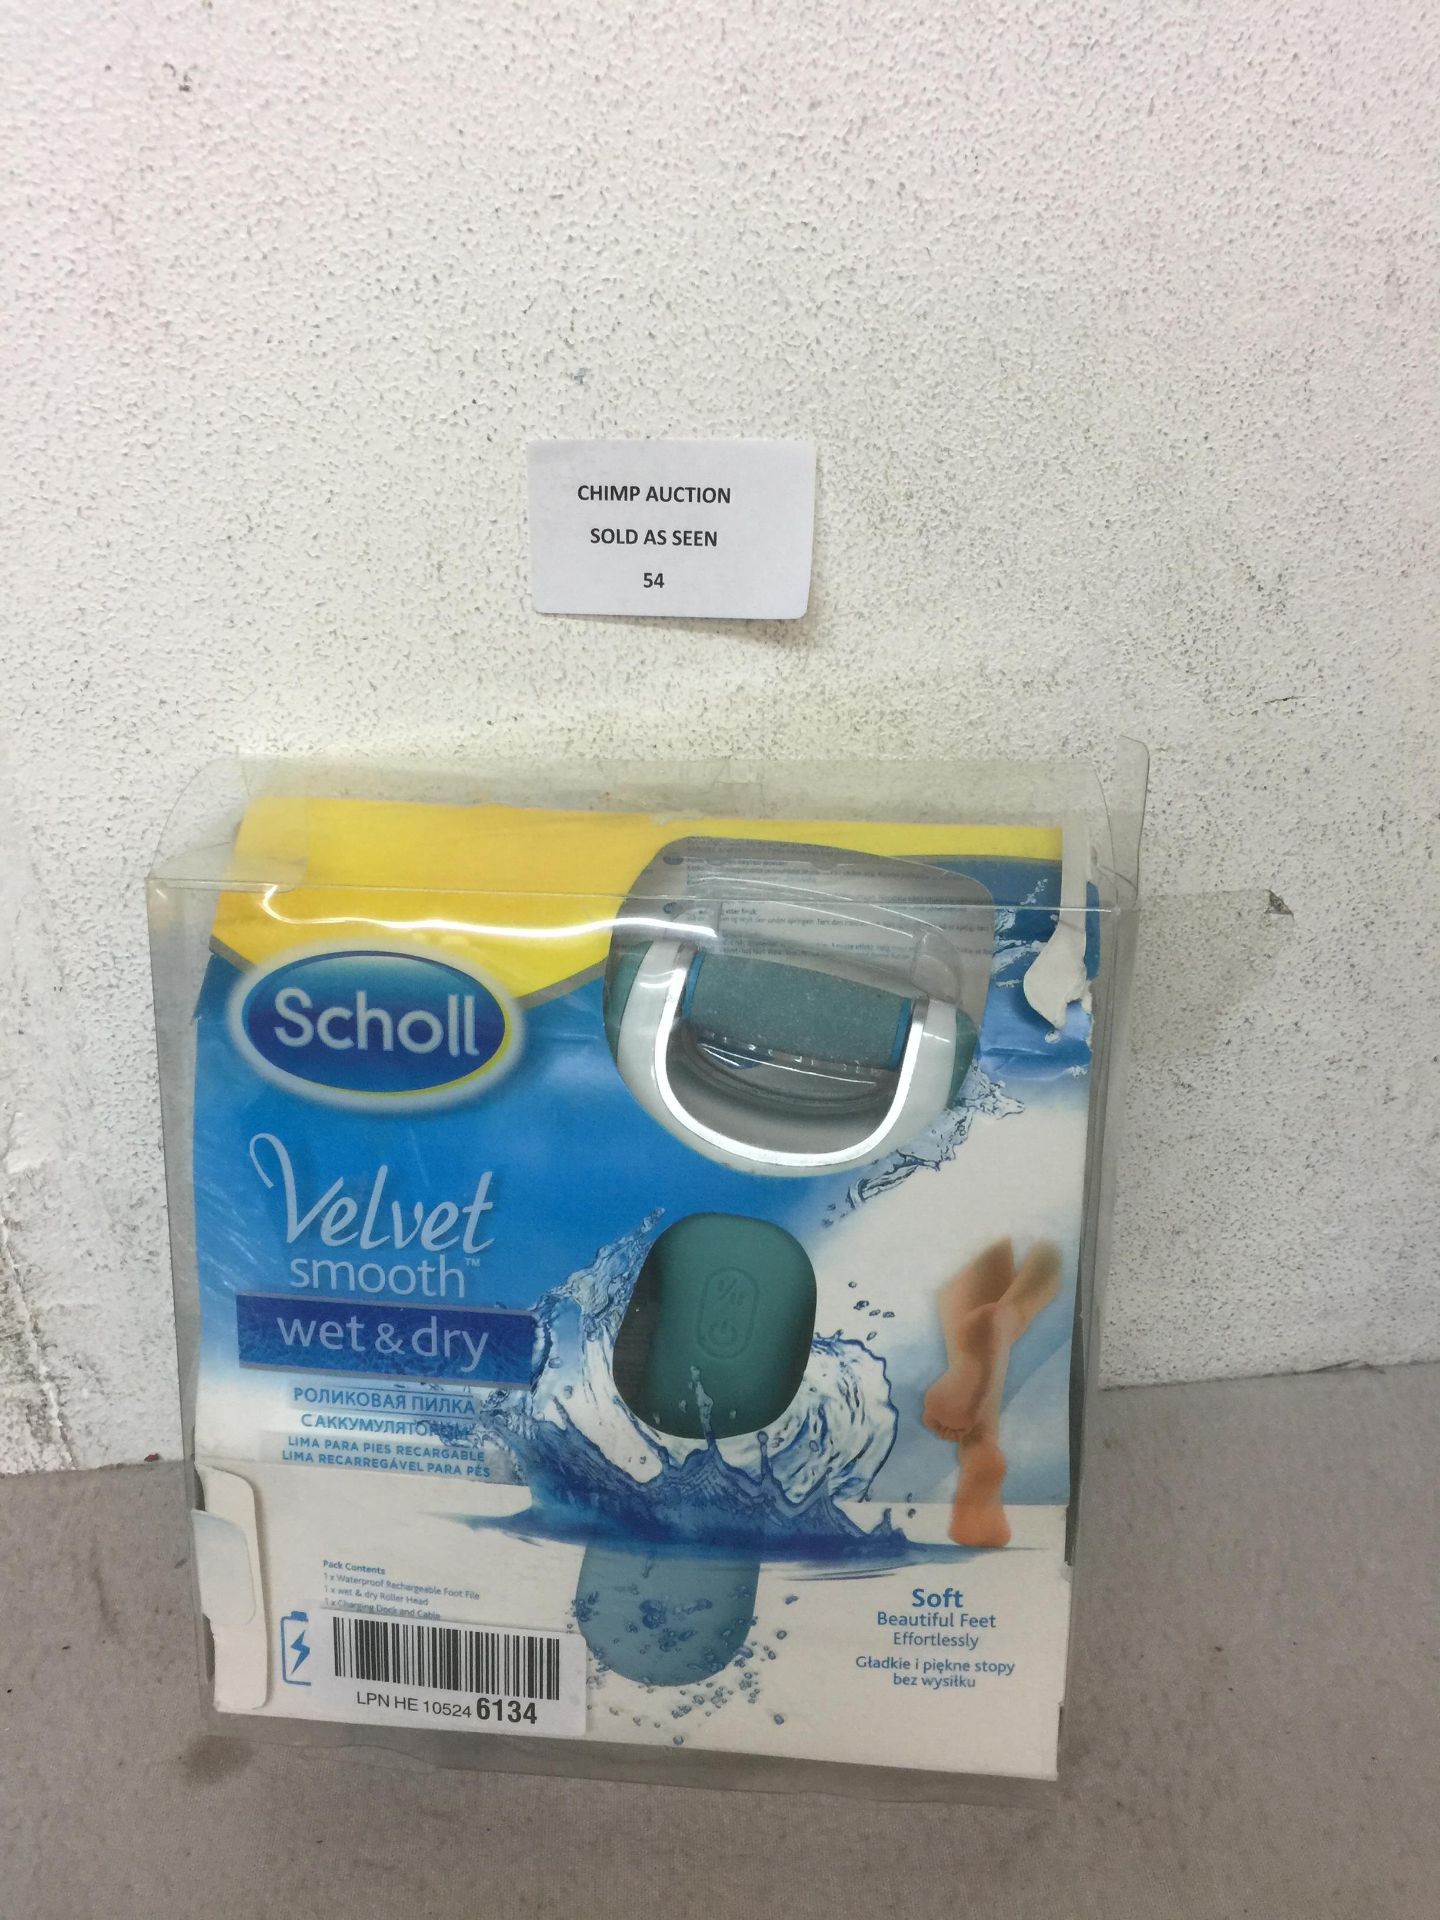 Scholl Velvet Smooth Wet & Dry Pedicure kit